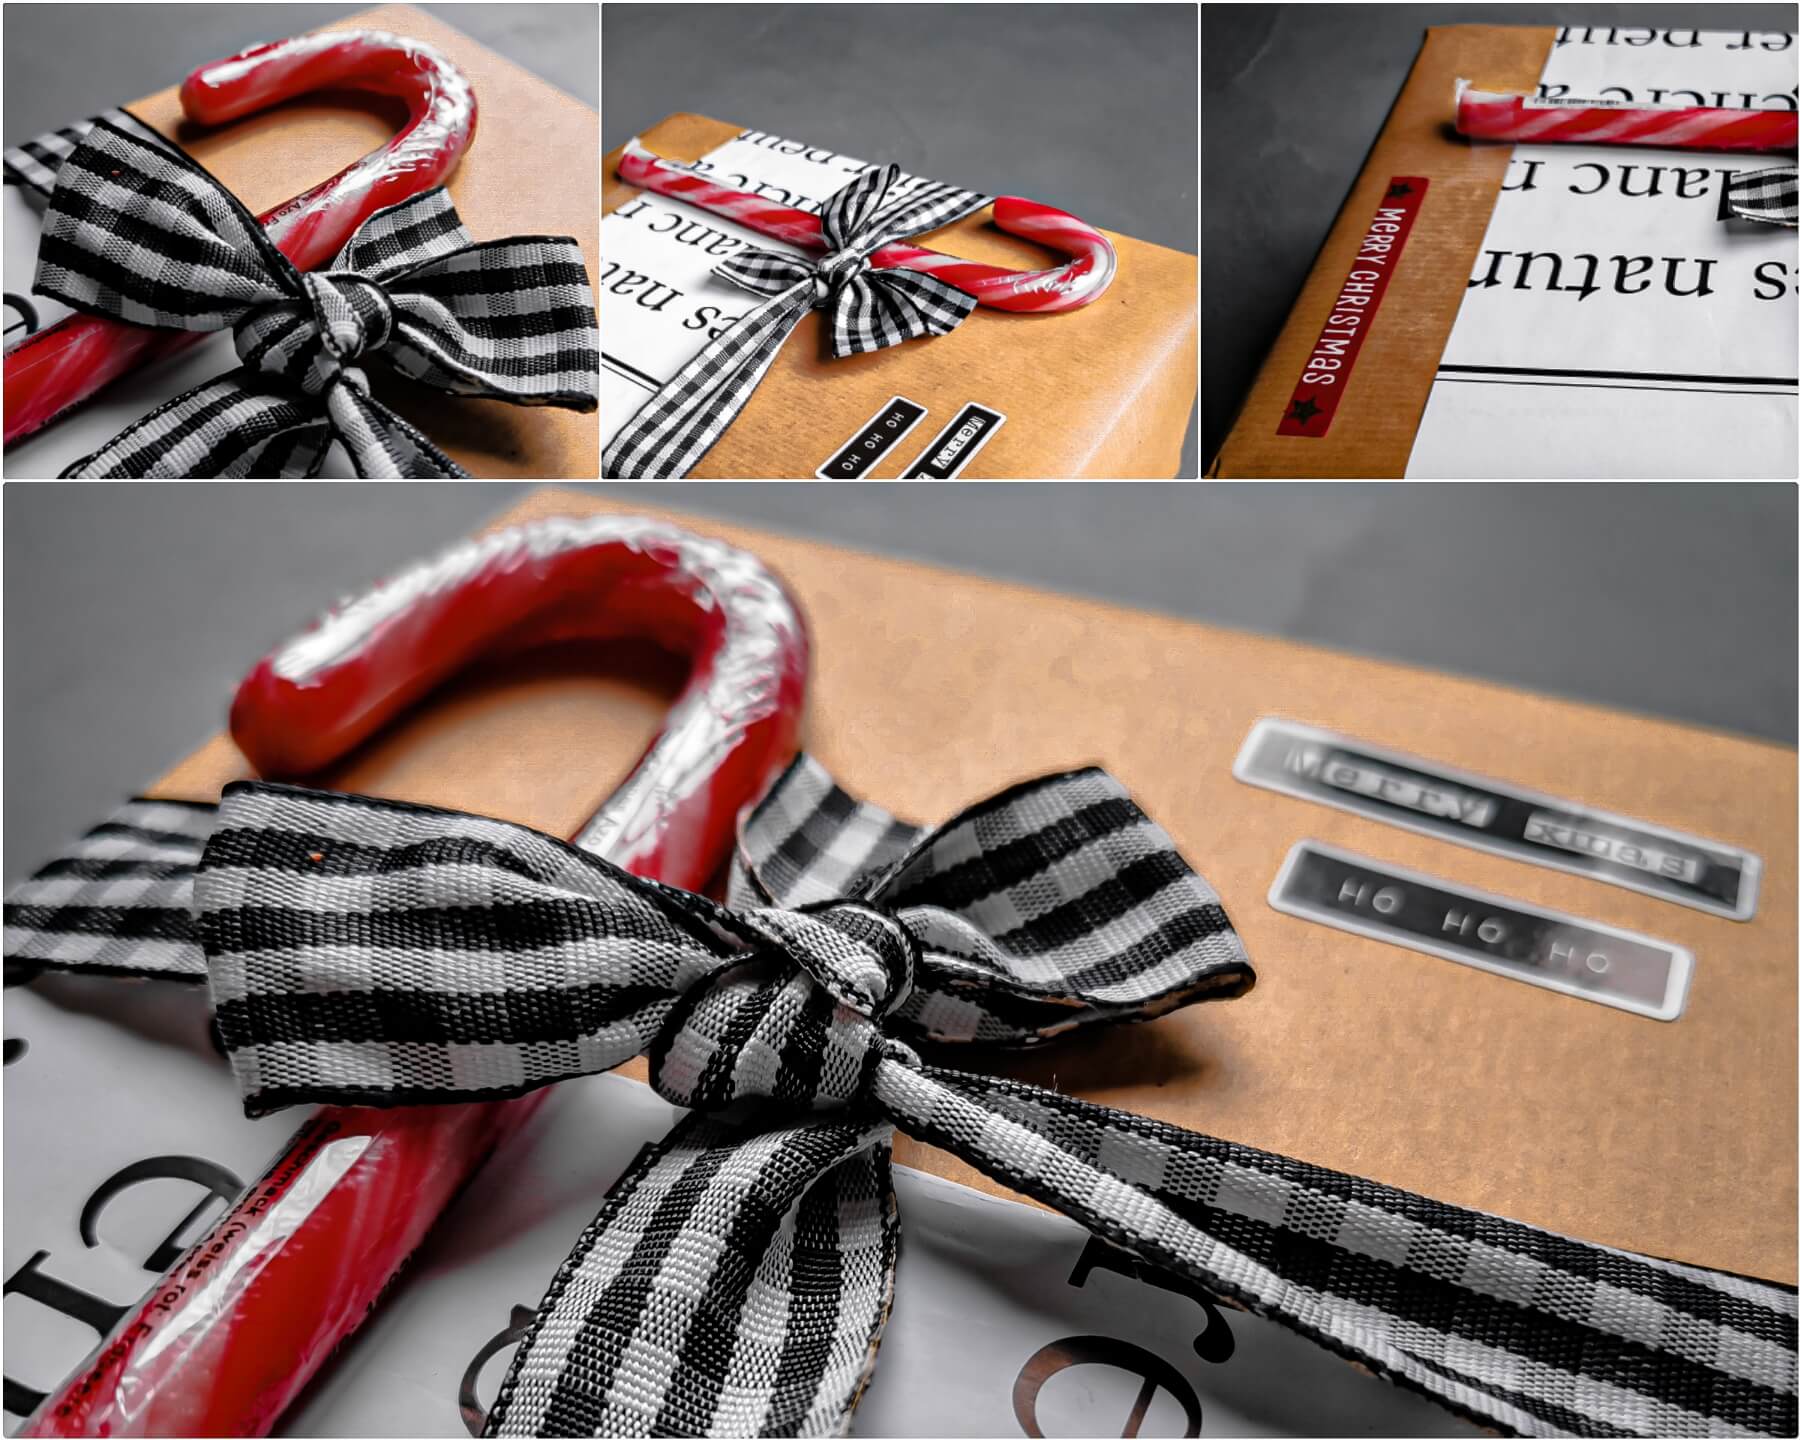 inCollage 20191215 035324668 resized 20191215 054324212 1 - Geschenke verpacken: 11 kreative Tipps zum Selbermachen